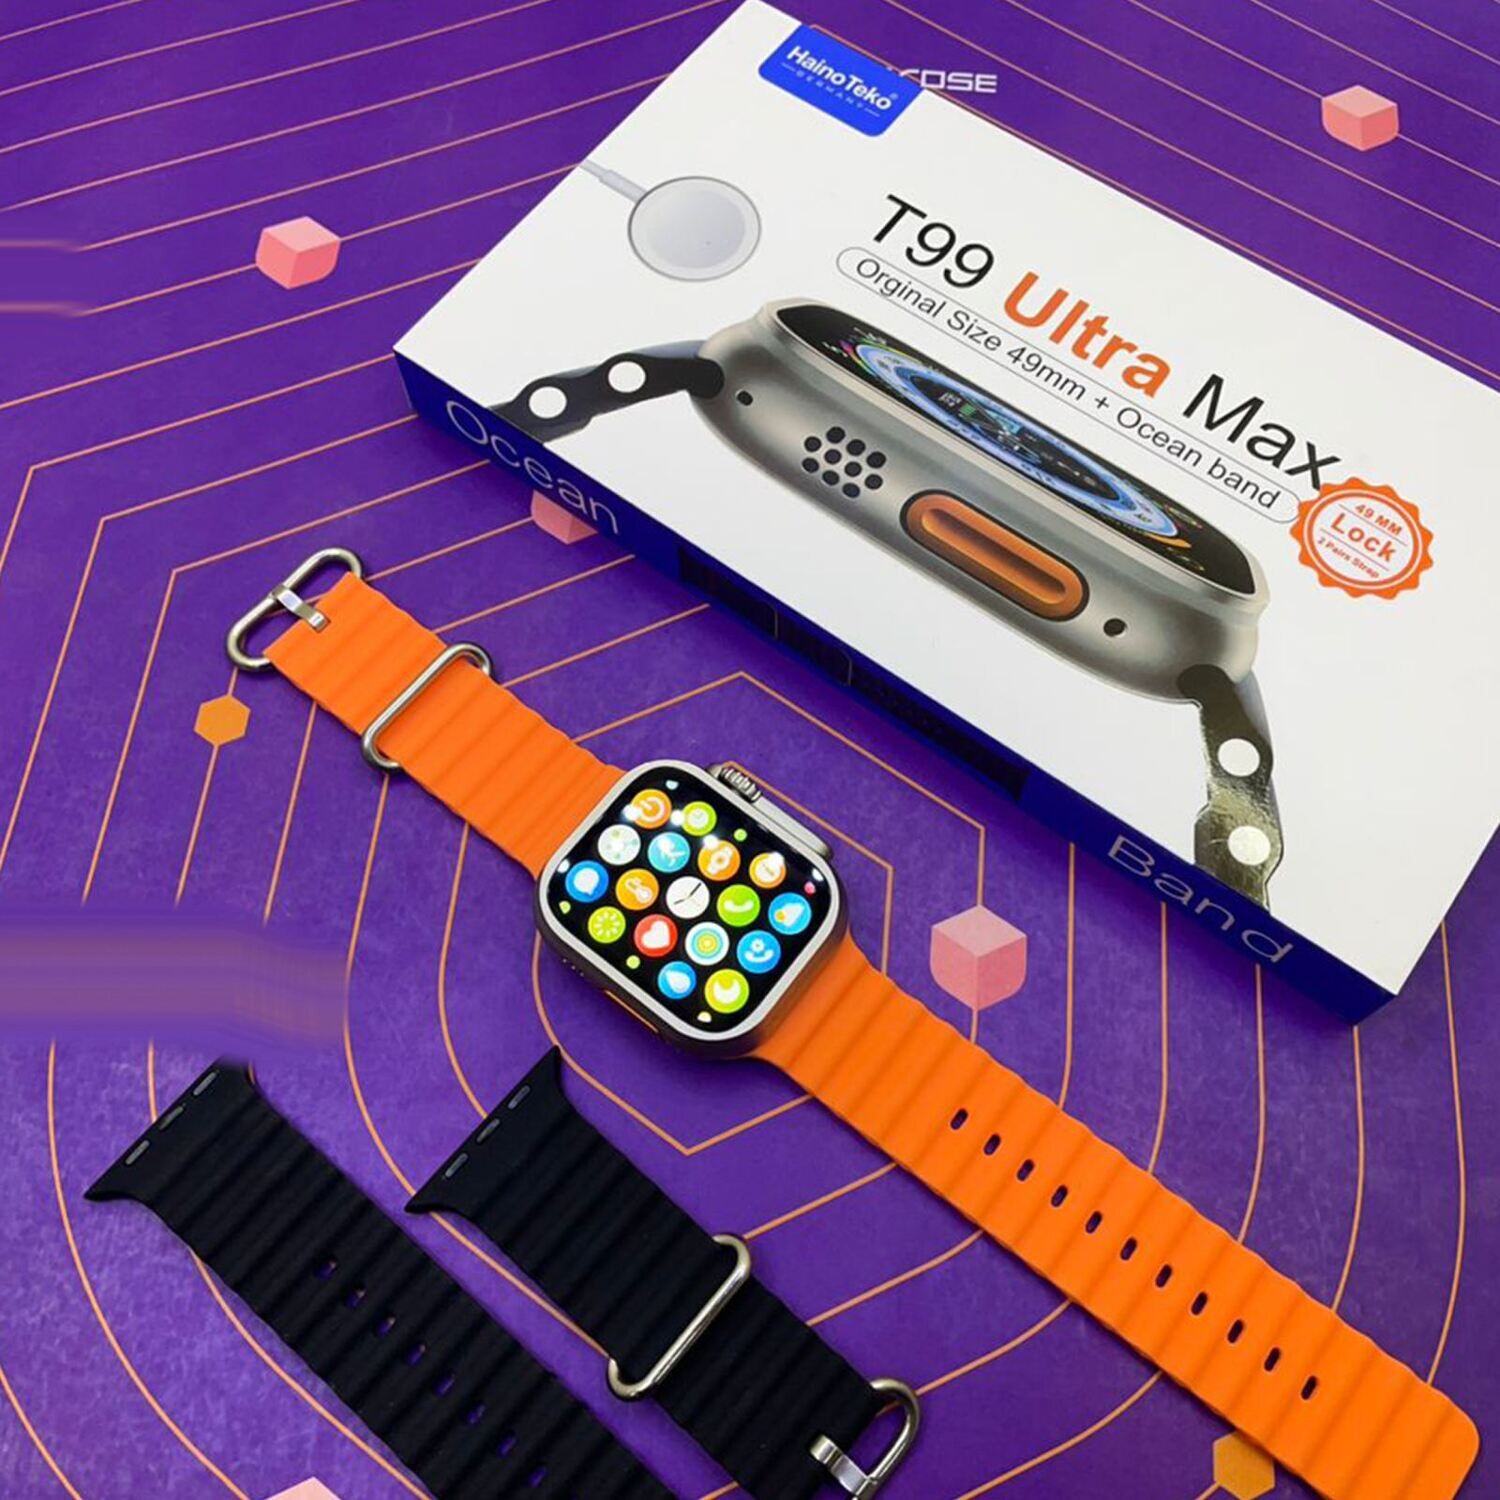 Smart Watch Haino Teko - Double Bracelet - T99 ULTRA MAX